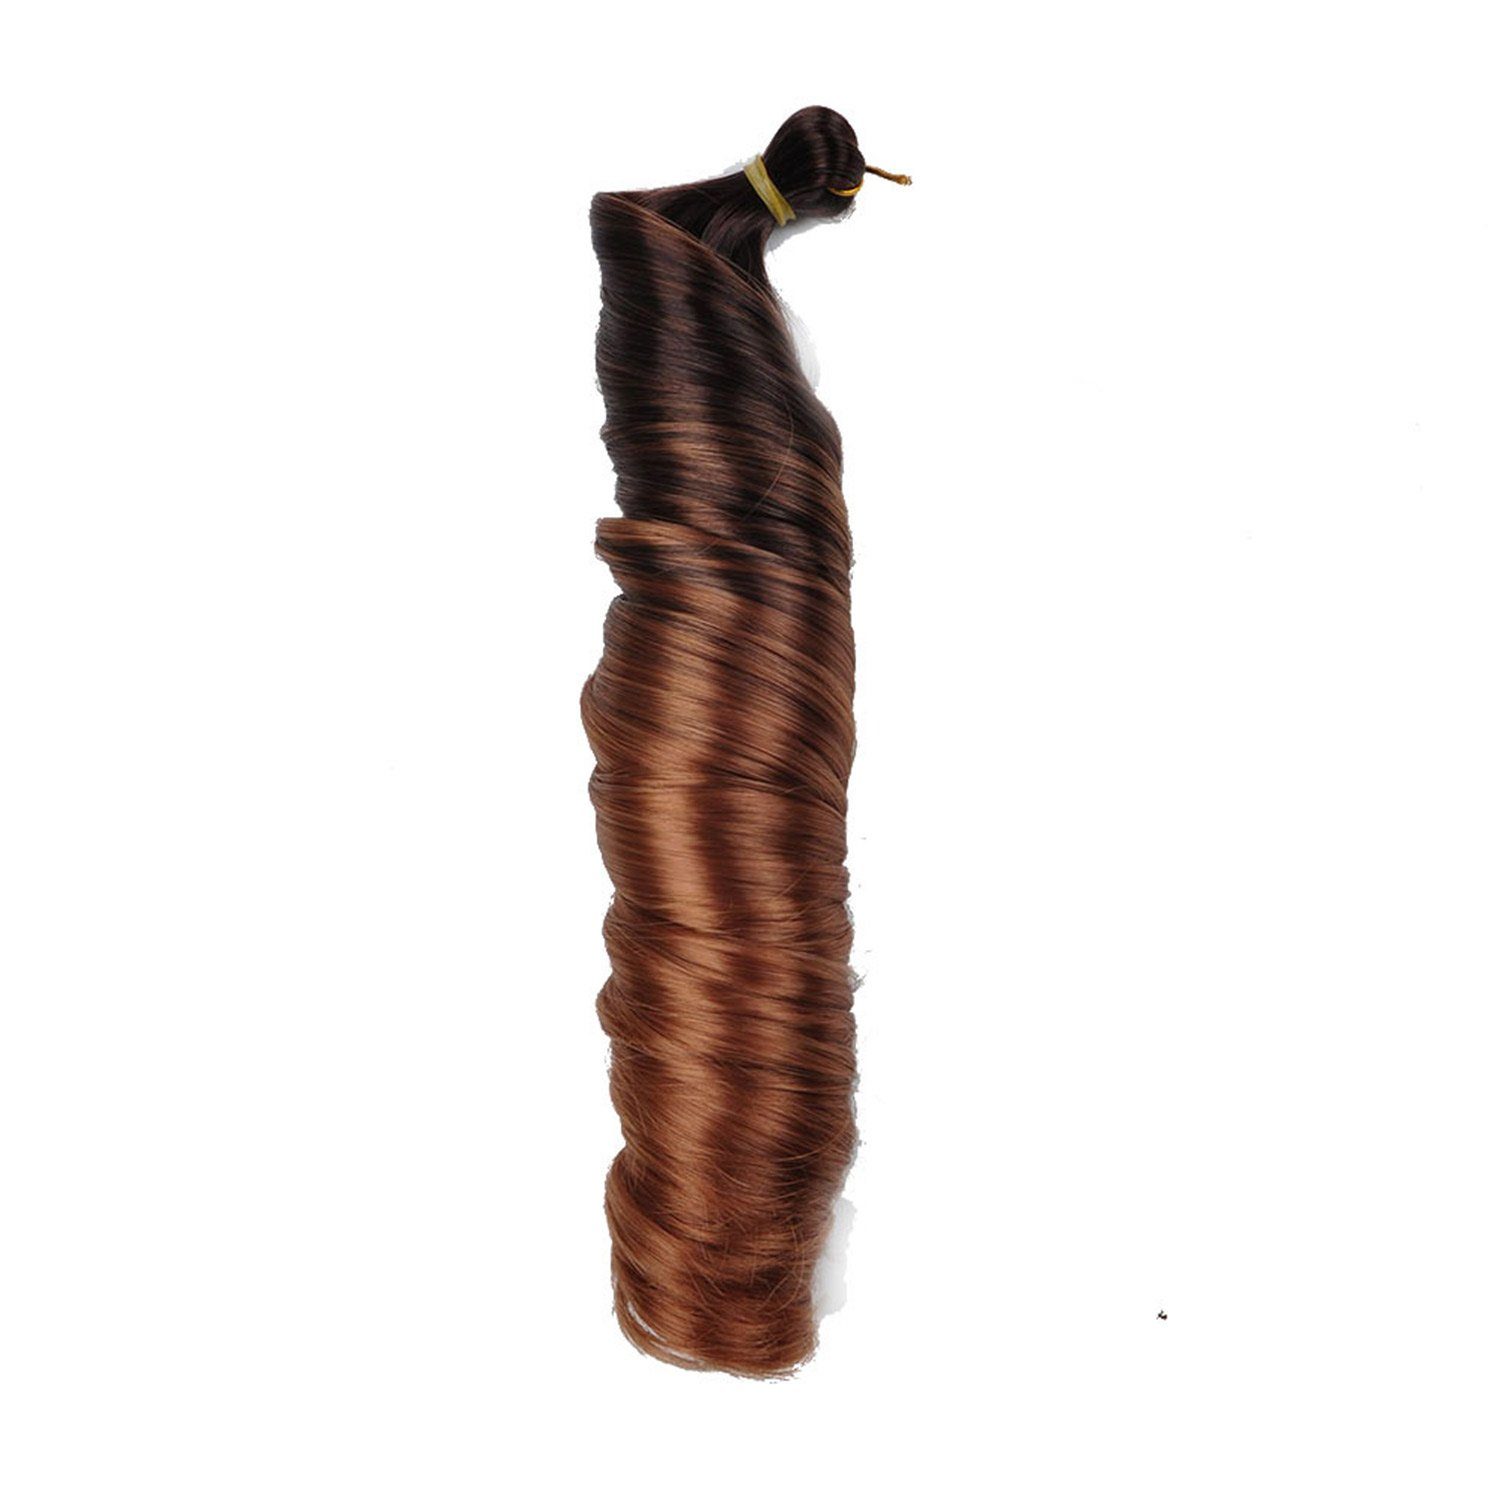 MAGICSHE Kunsthaarperücke 3Pack Französisch lockiges geflochtenes Haar, lose Welle Häkelgeflecht, Elastischer Zopf lockiger synthetischer Zopf (24 Zoll) 4/30#